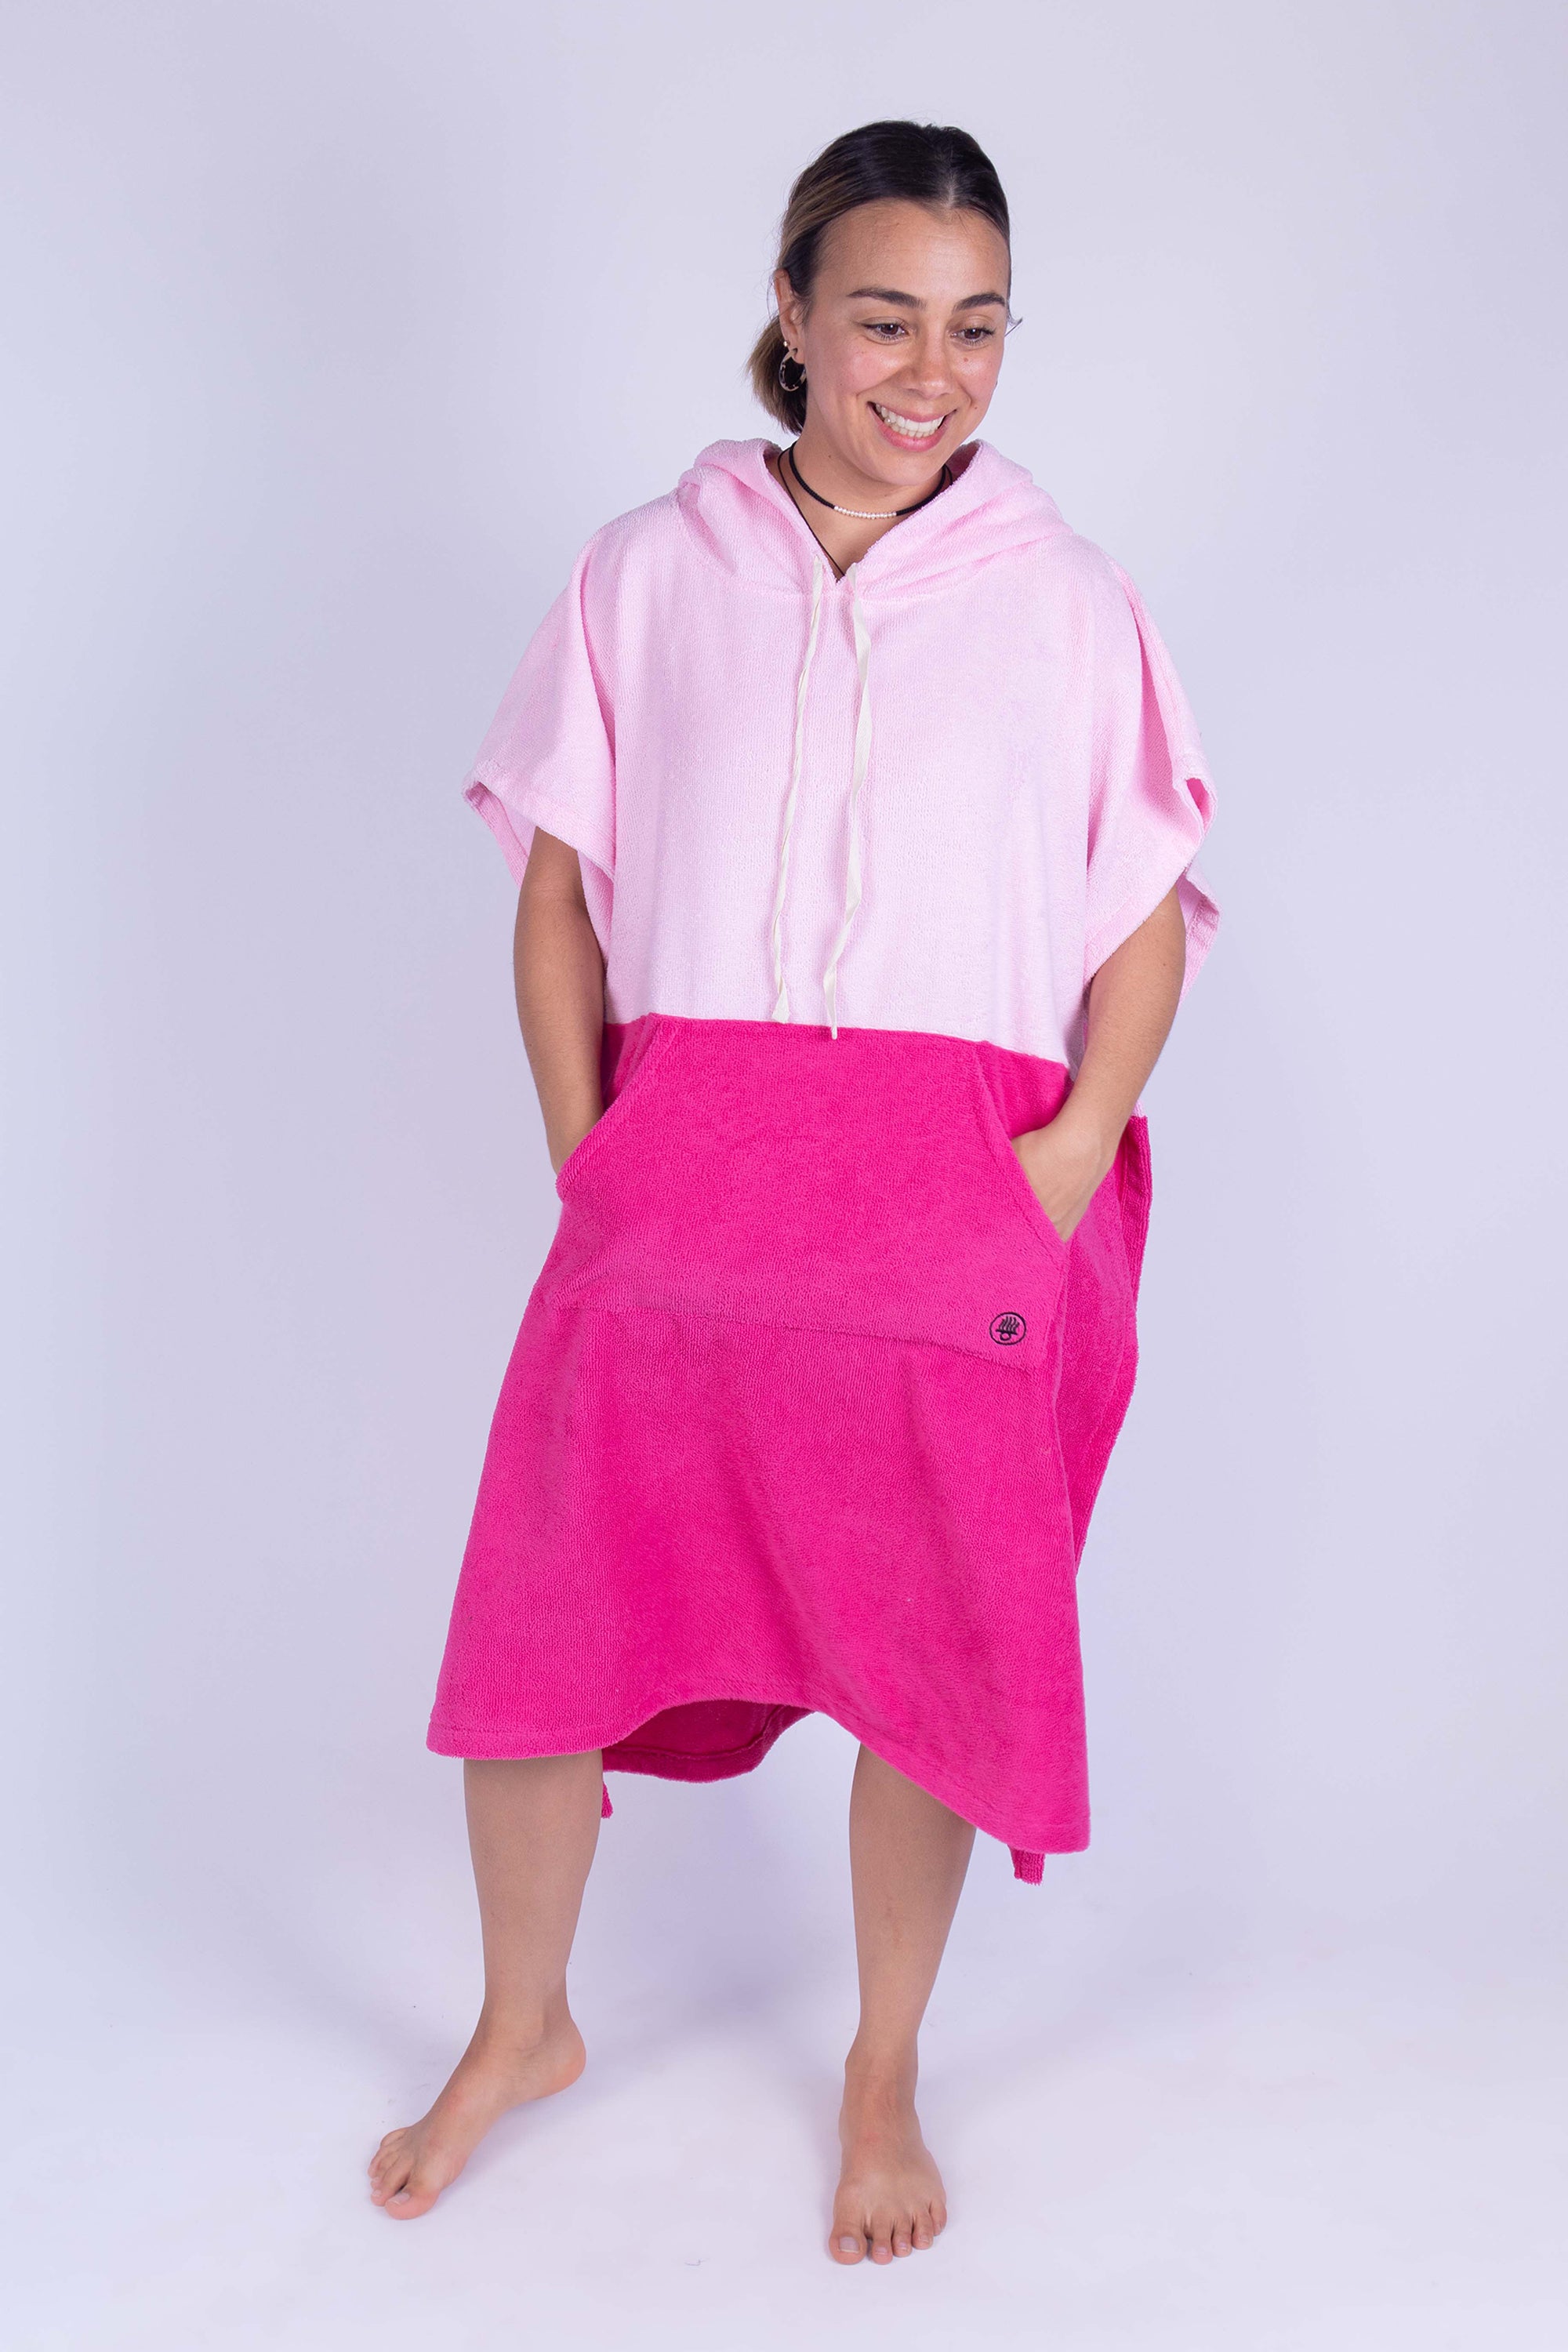 Poncho toalla cambiador de dos colores (Baby pink y rosa mexicano), con bolso en frente y gorro. Ideal para cambiarte en cualquier lugar cómodamente y estar en el después del agua.